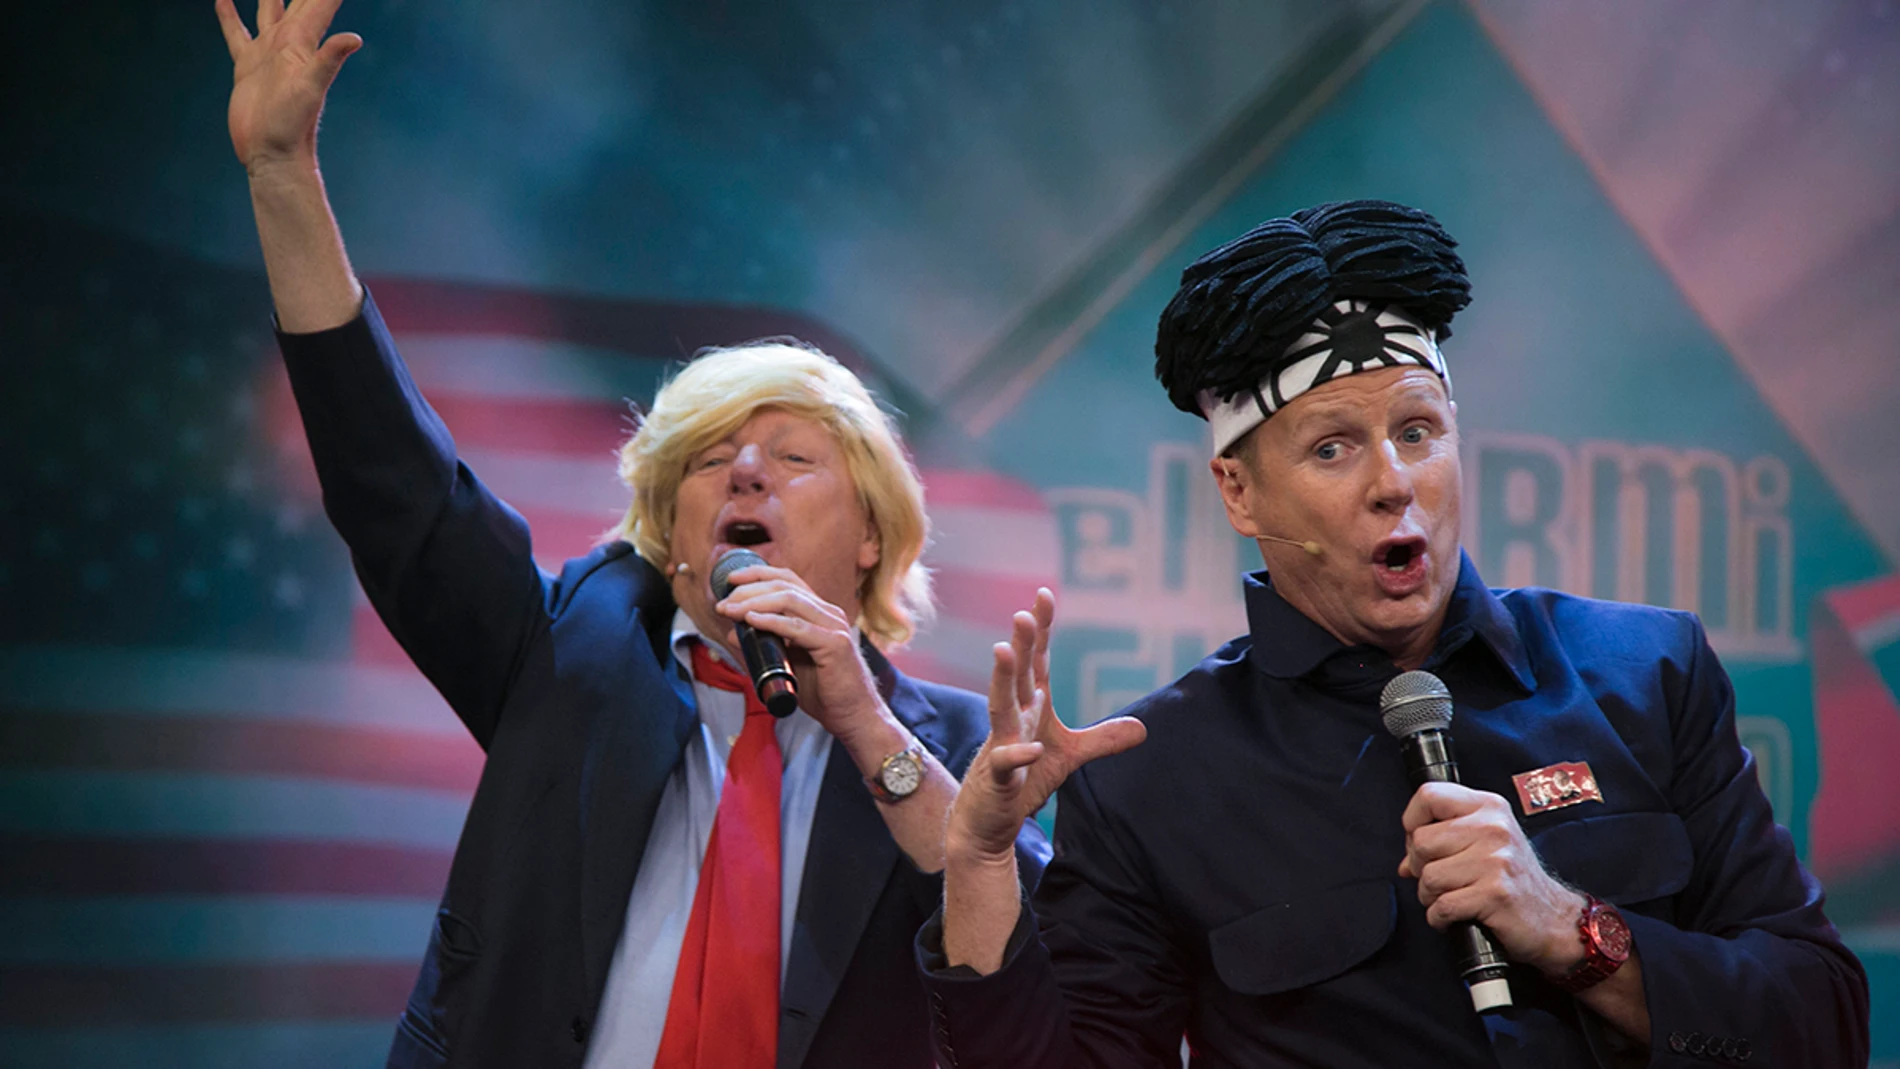 Los Morancos se transforman en Kim Jong-un y Donald Trump para estrenar, en exclusiva, su nuevo single en 'El Hormiguero 3.0'